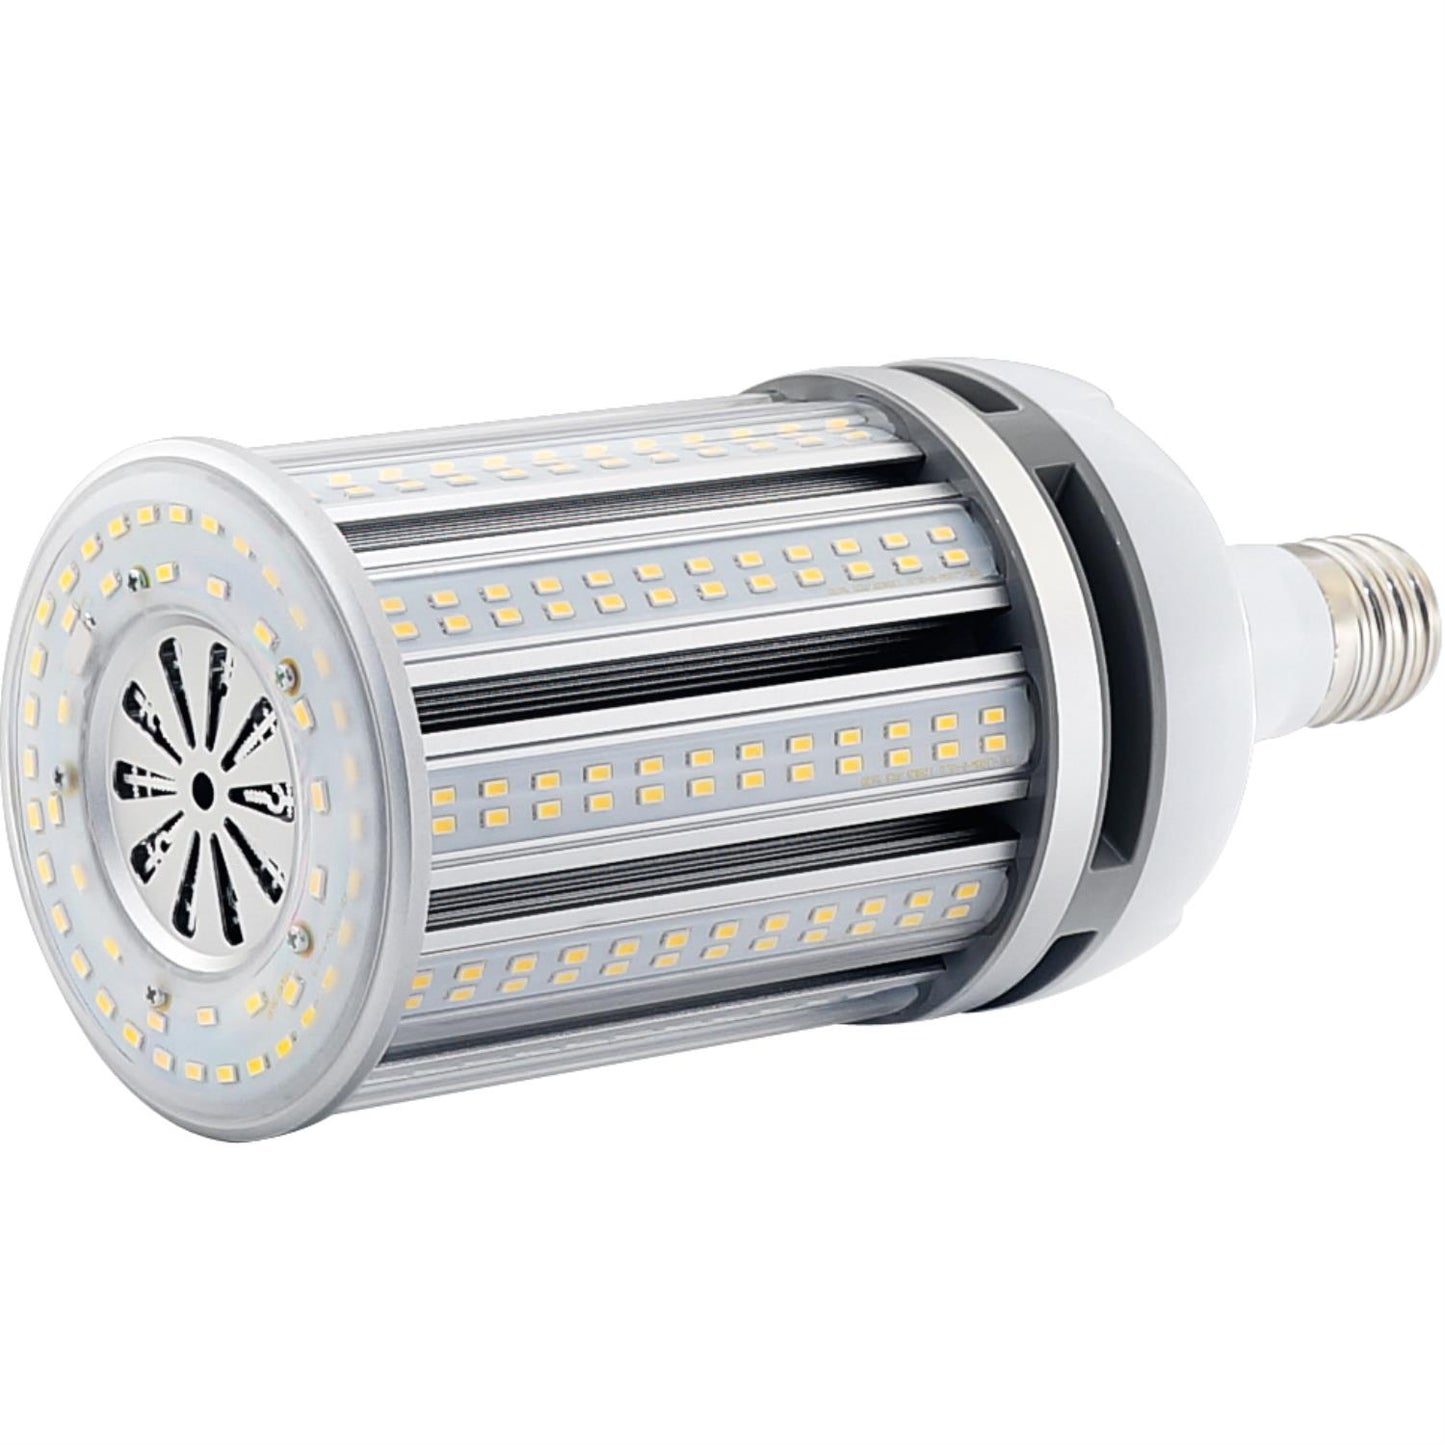 Sunlite CC/LED/100W/E39/MV/50K LED 100W (400W MHL/HPSW Equivalent) Corn Bulb, Mogul (E39), 5000K Super White